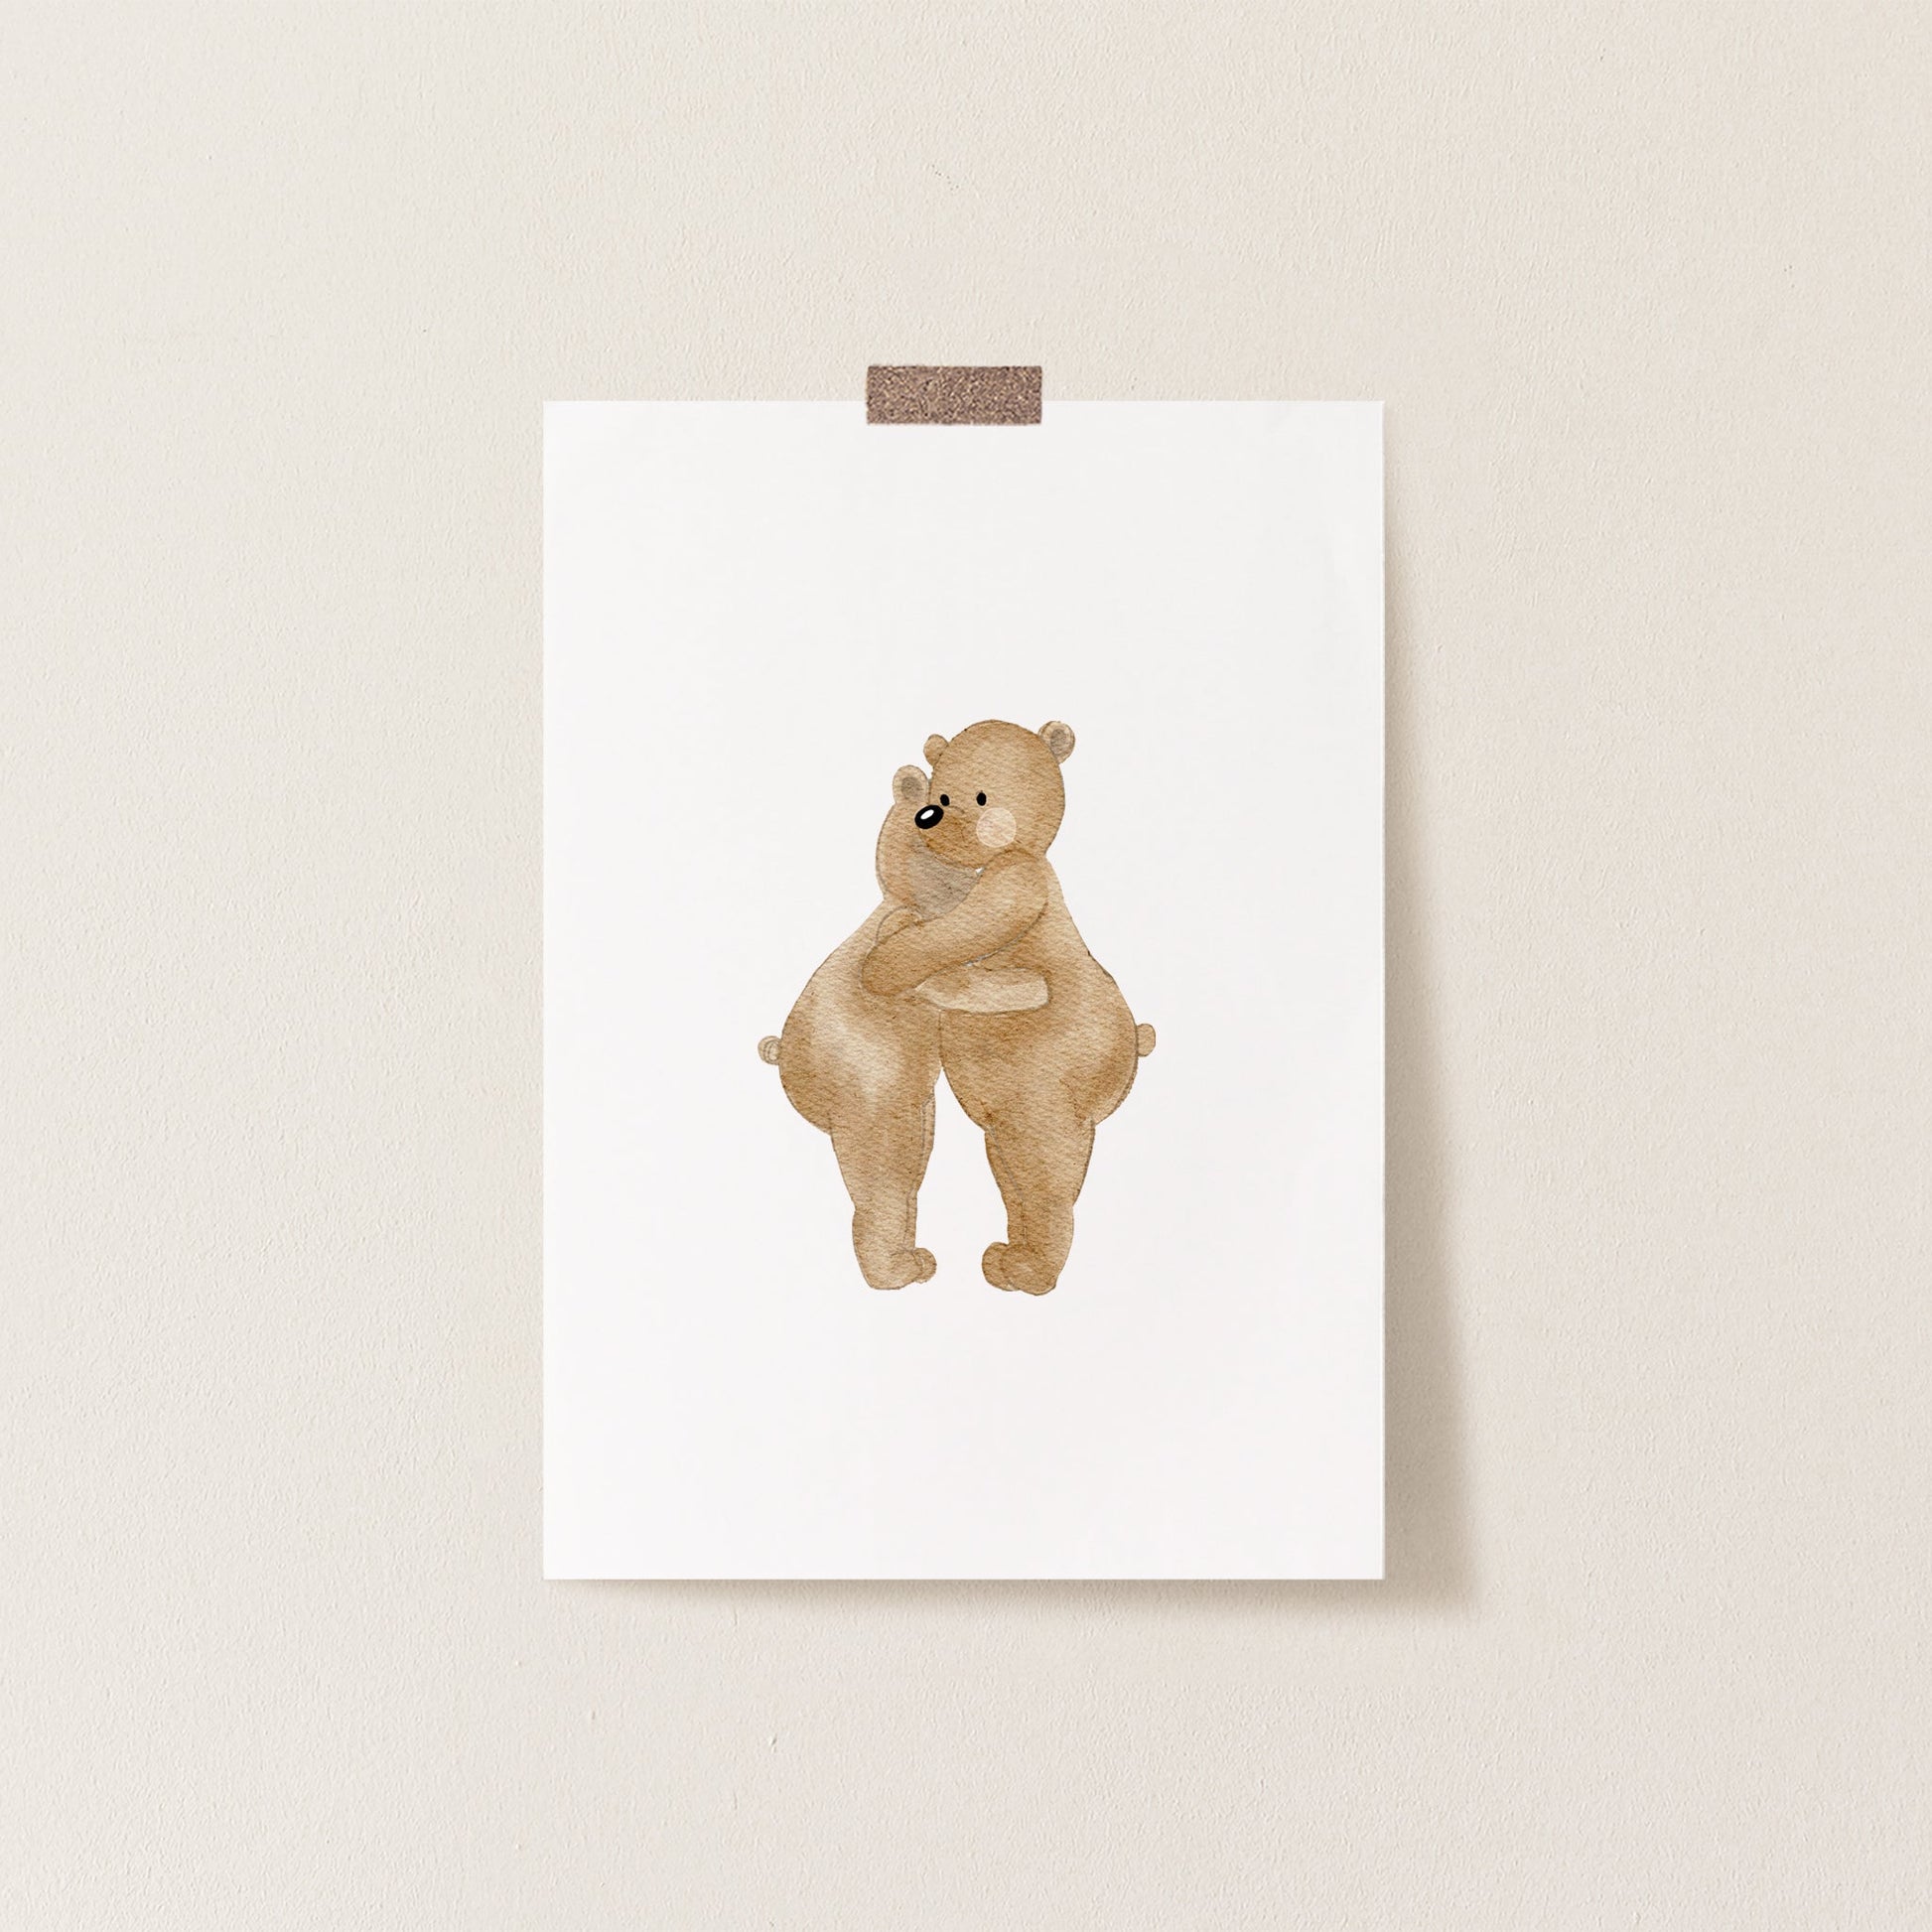 Poster 'Bären-Umarmung' | Kinderzimmer Deko | DIN A4 oder A5 Poster Kotenkram DIN A4 (210 x 297 mm)